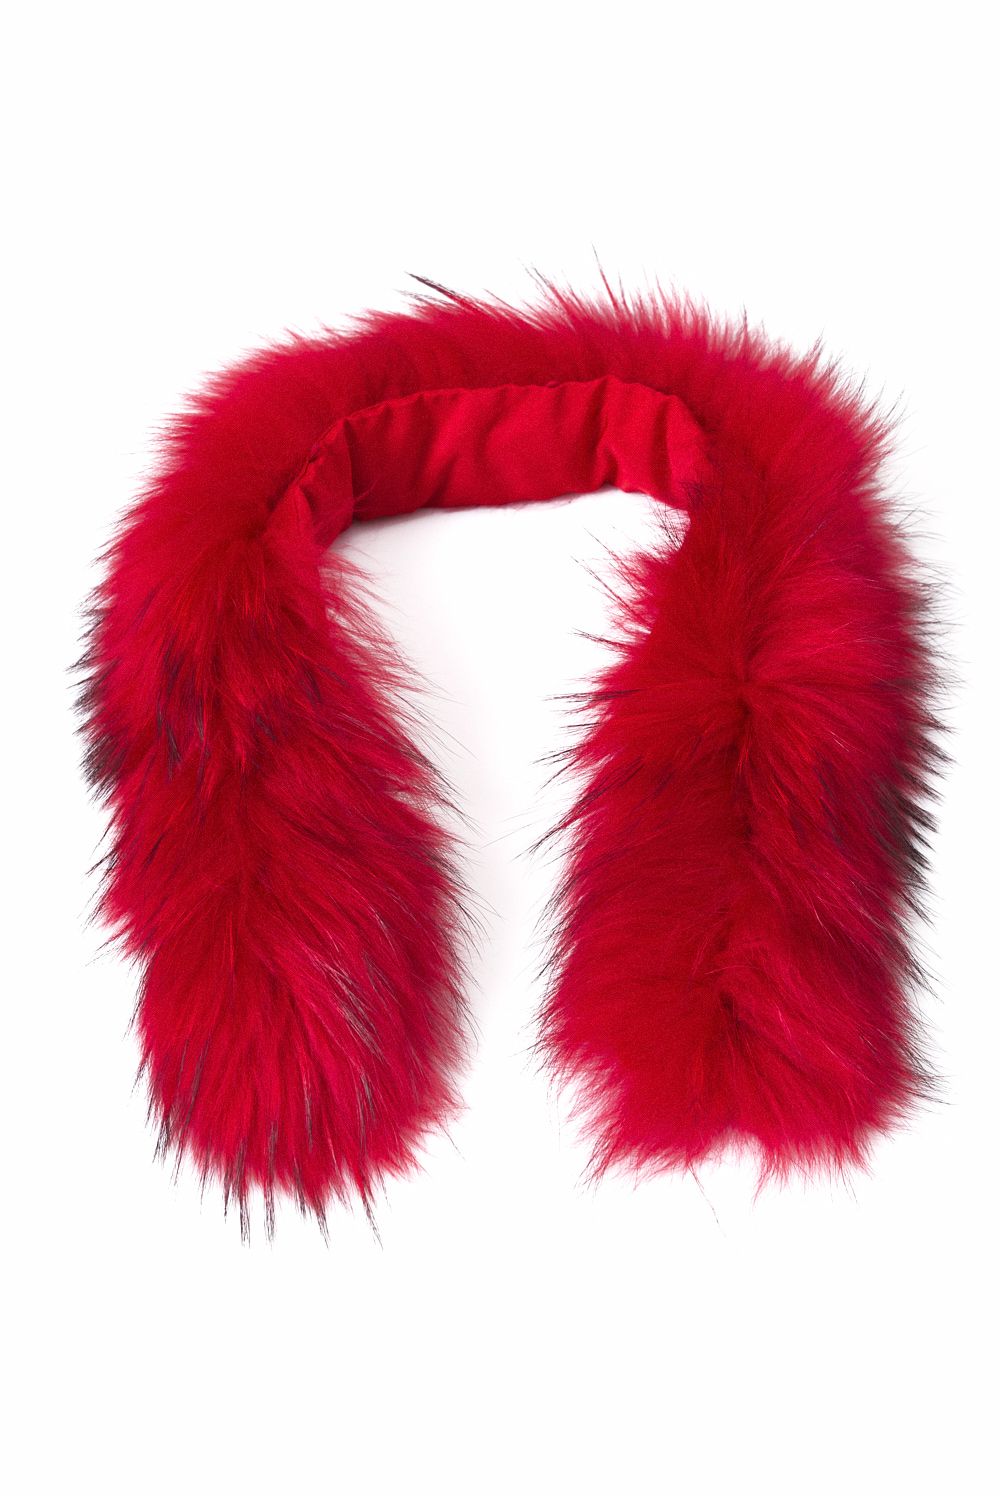 Fezilia Bogas red natural fur ladies collar